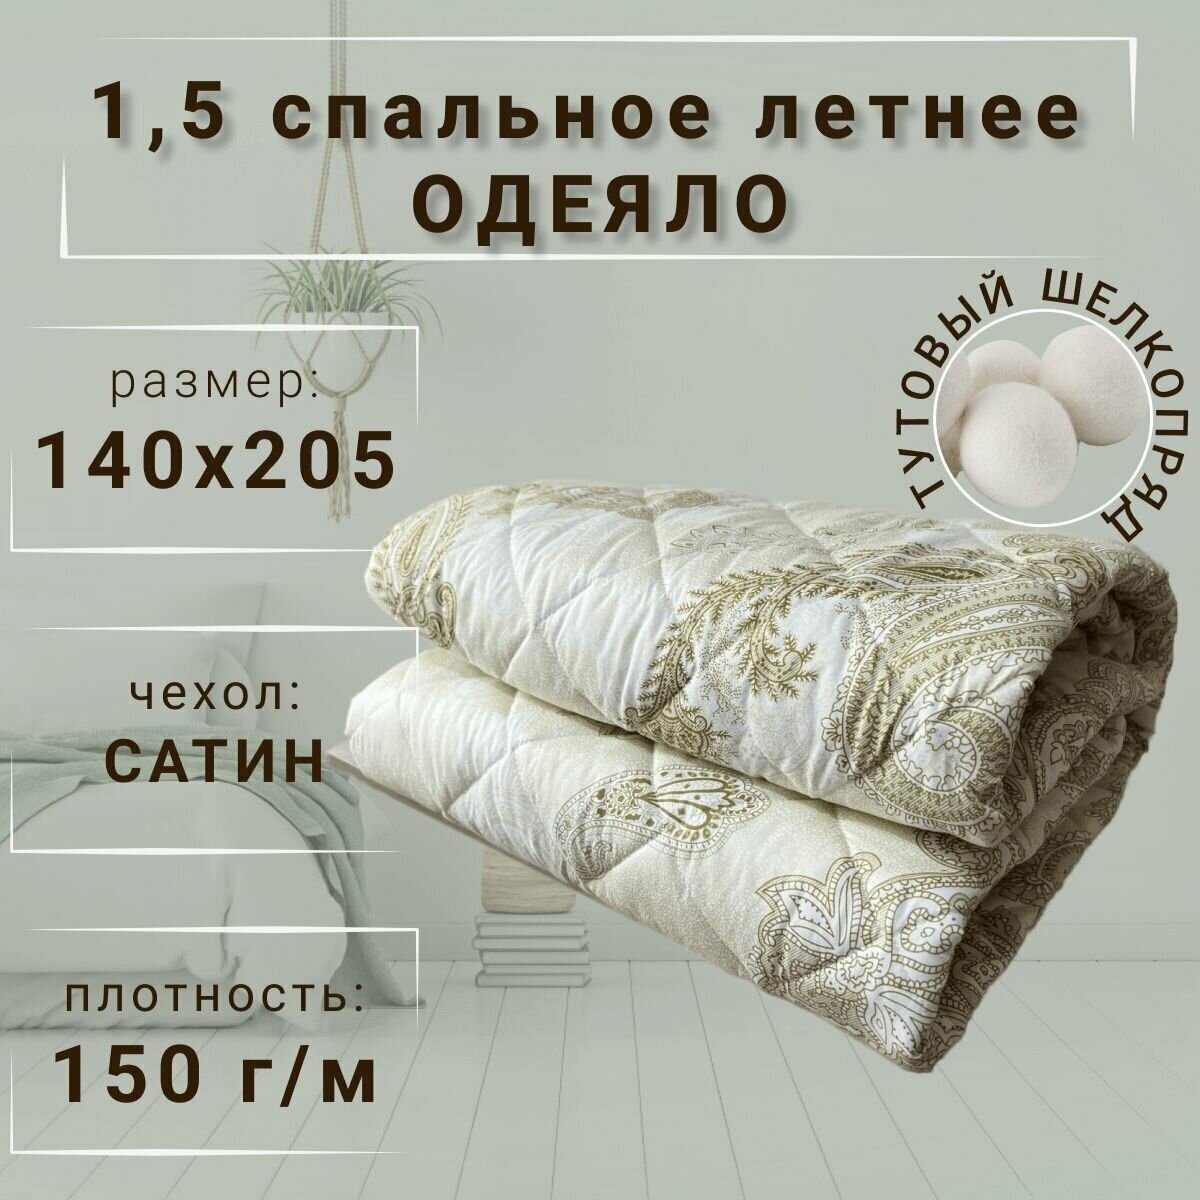 Одеяло Тутовый шелкопряд летнее 1,5 спальное (140х205), сатин, 150 г/м - фотография № 1